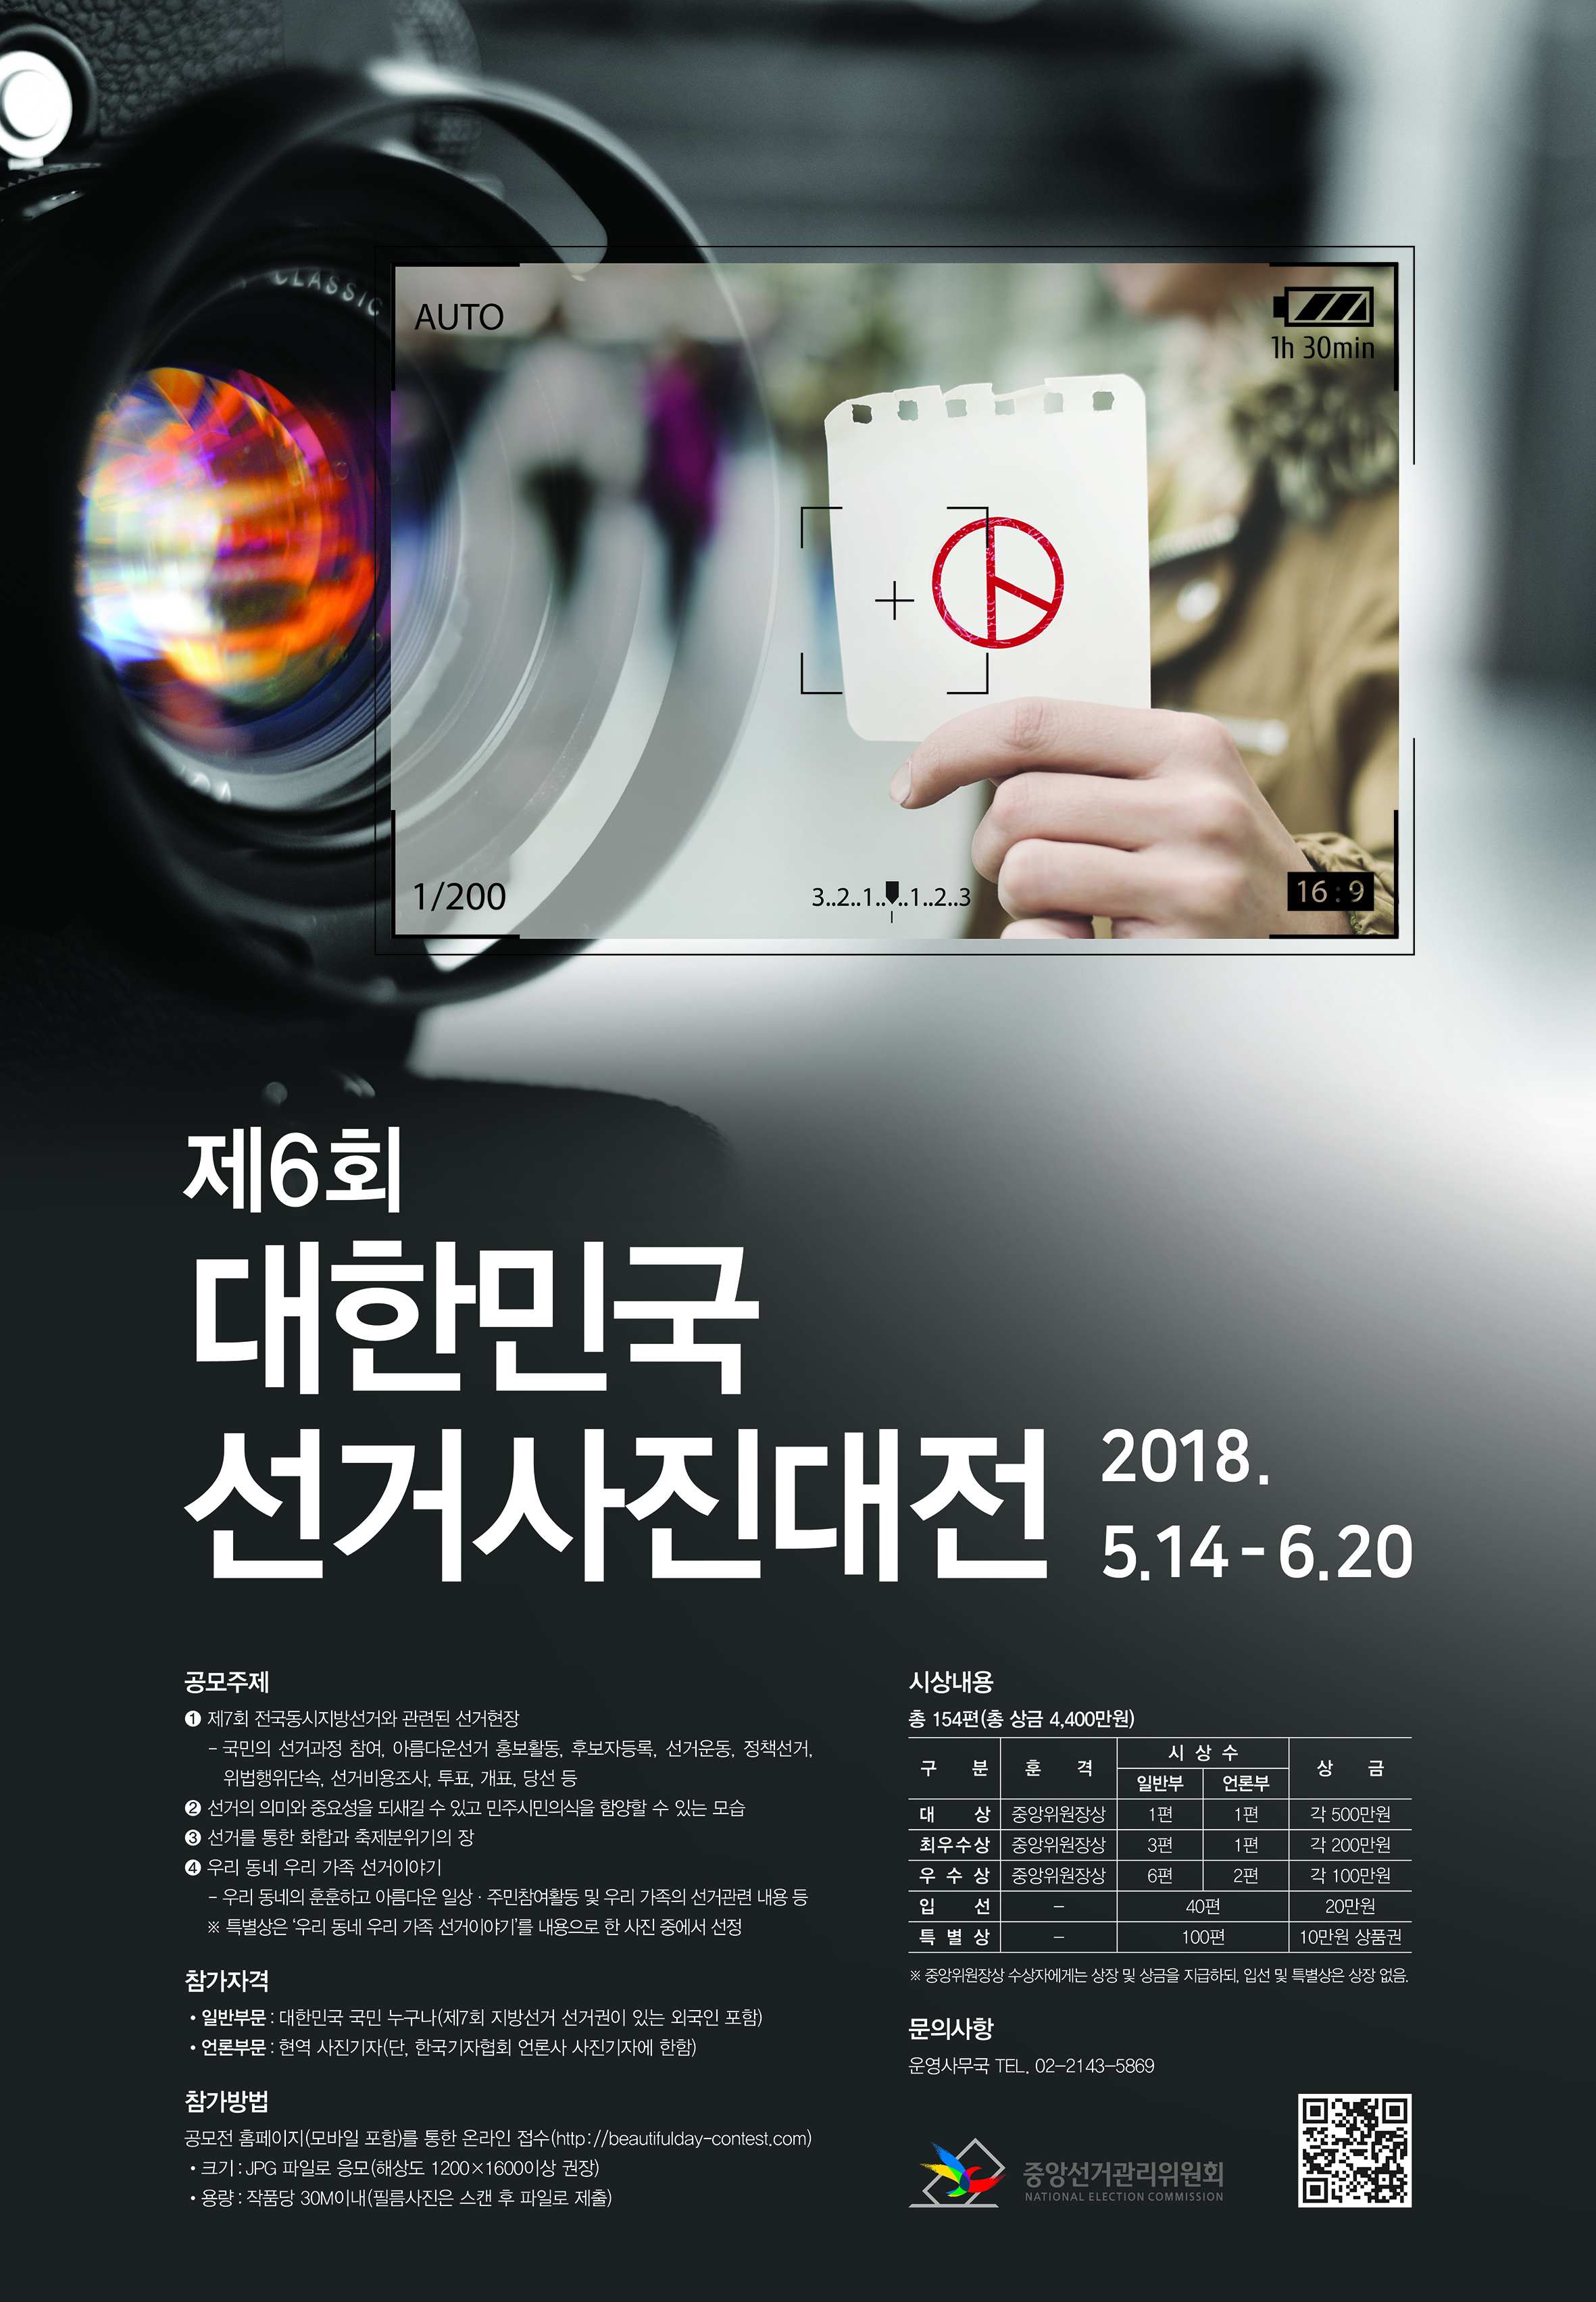 제6회 대한민국 선거사진대전